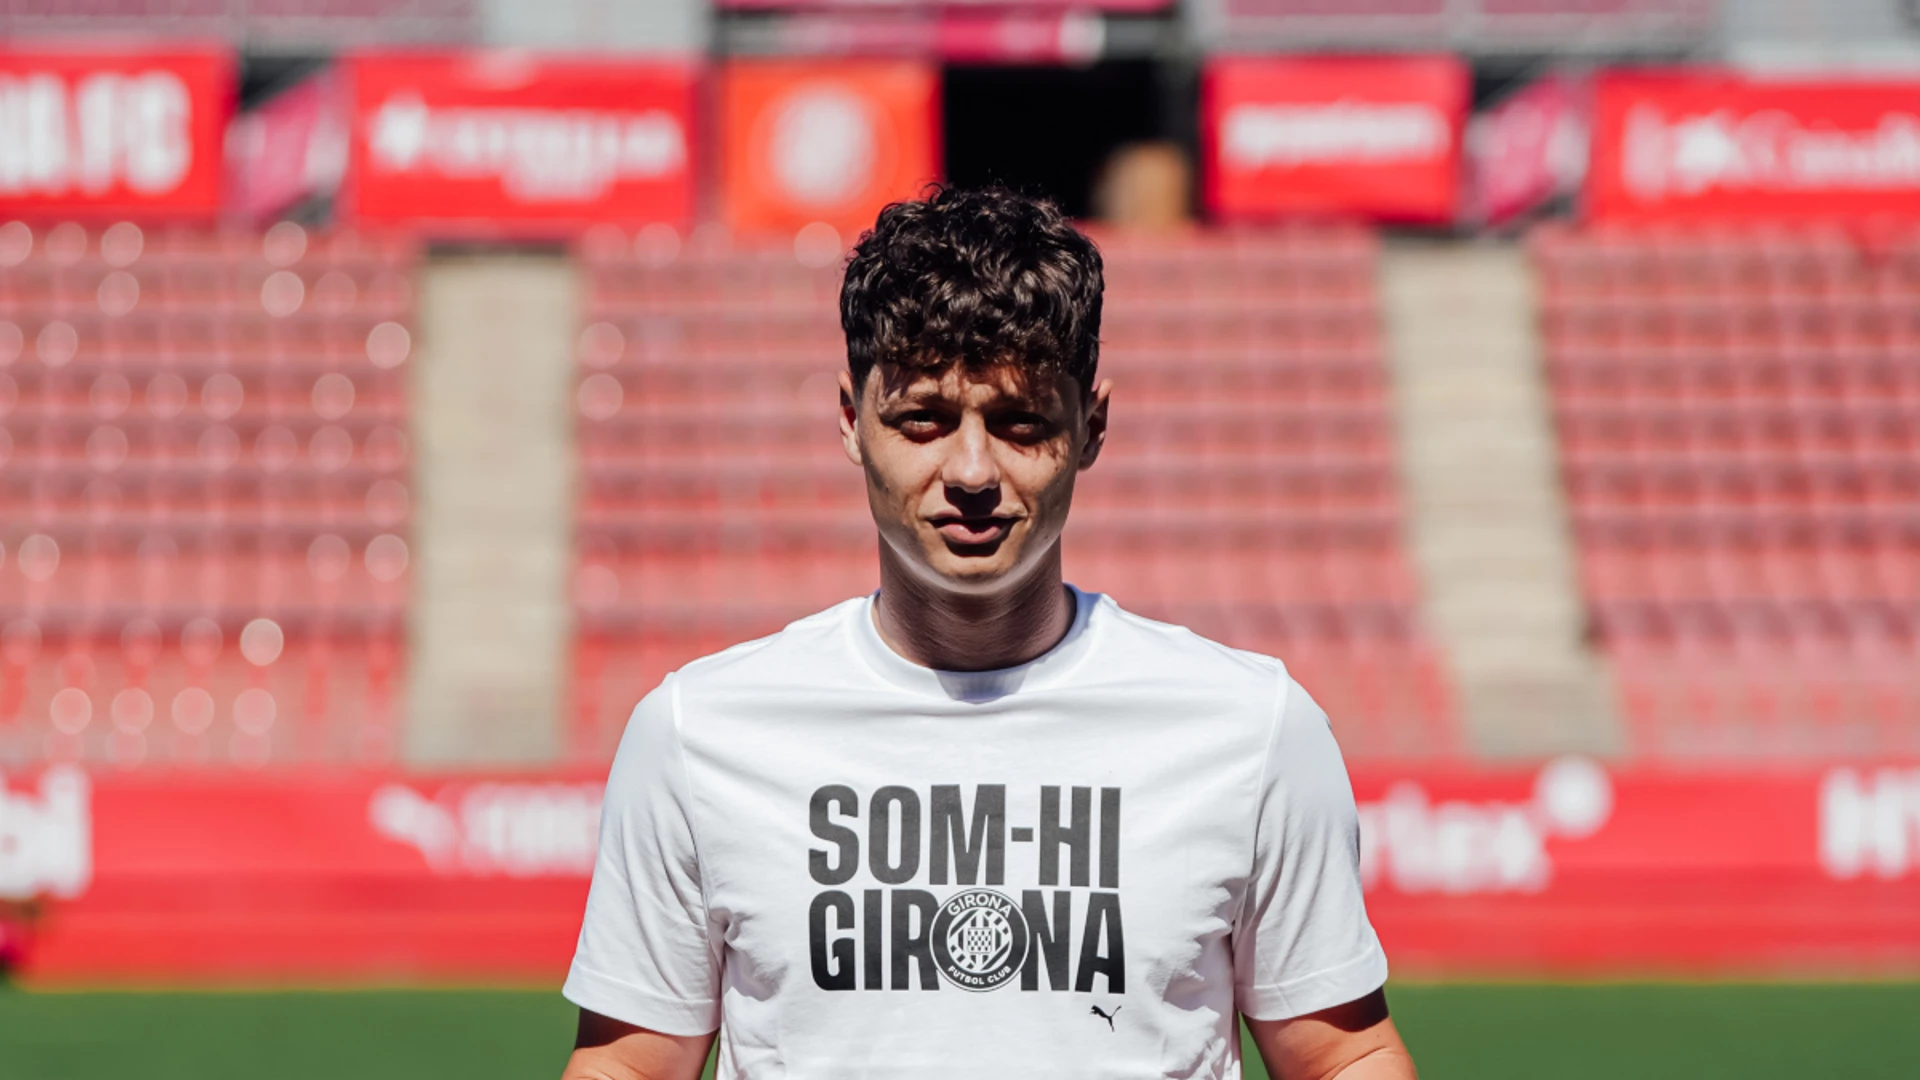 Czech Republic midfielder Krejci signs with Girona